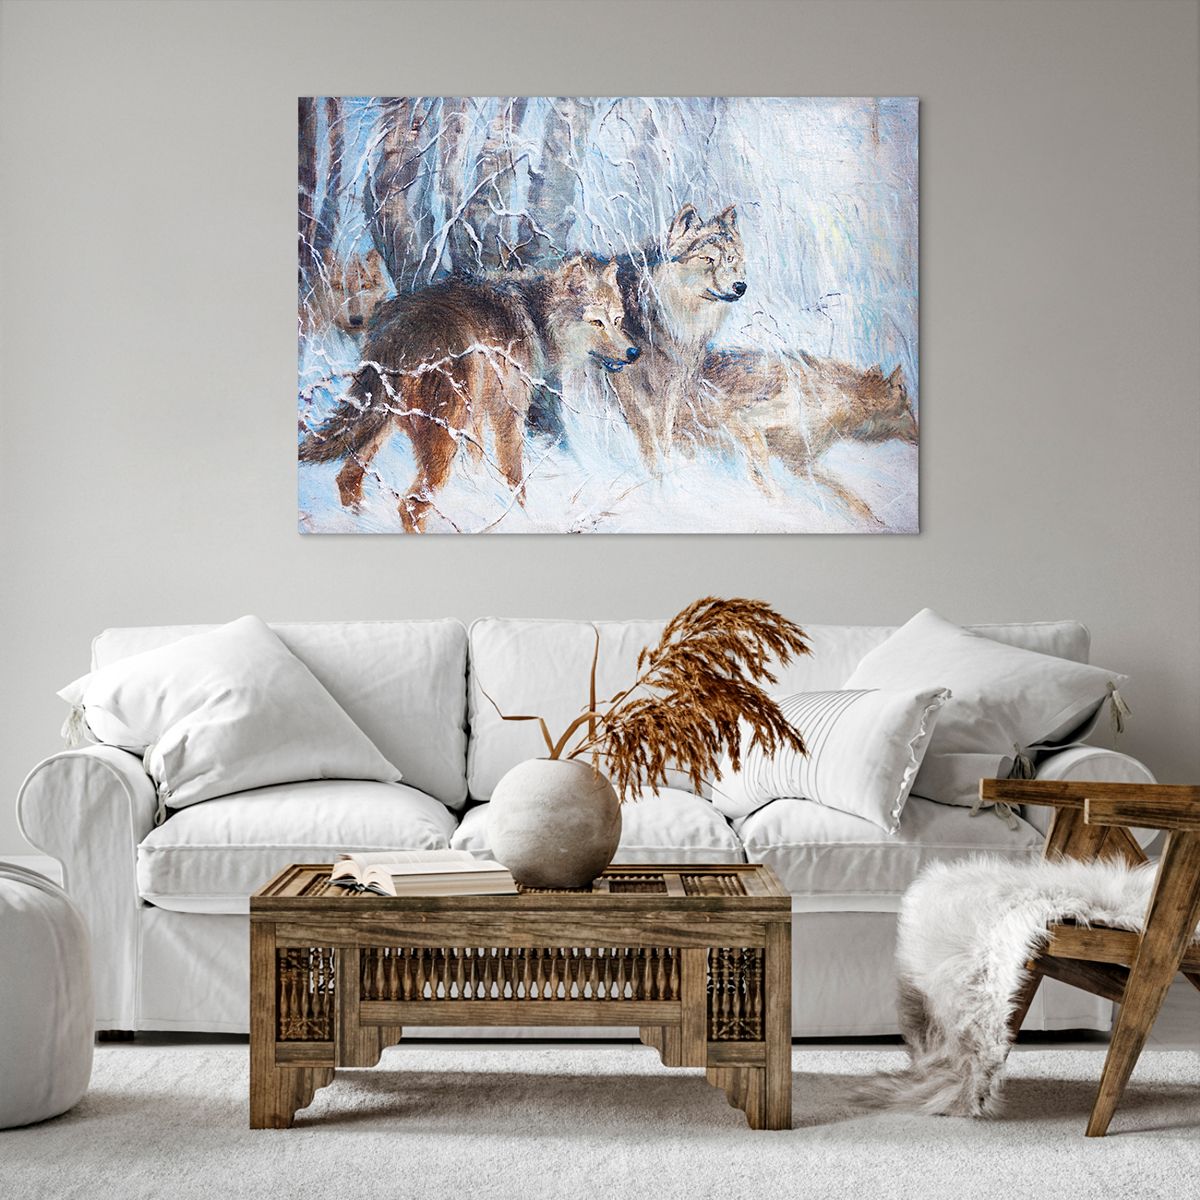 Bild auf Leinwand Tiere, Bild auf Leinwand Wölfe, Bild auf Leinwand Wald, Bild auf Leinwand Natur, Bild auf Leinwand Kunst